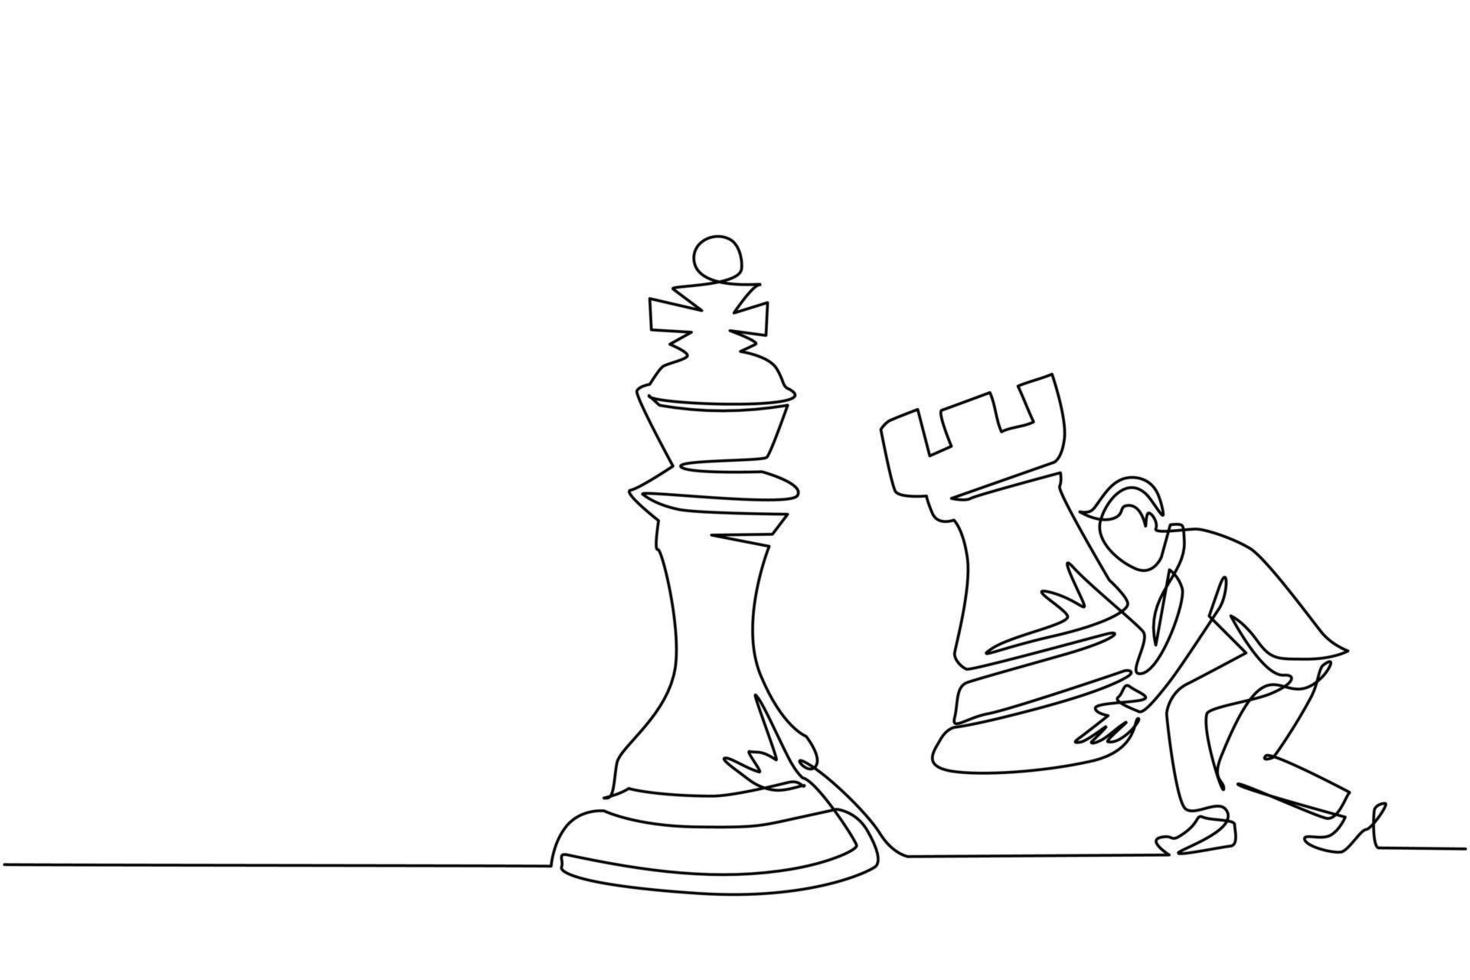 un uomo d'affari di disegno a una linea continua che tiene il pezzo degli scacchi della torre per battere il re degli scacchi. pianificazione strategica, strategia di sviluppo del business, tattiche nell'imprenditorialità. vettore di disegno a linea singola